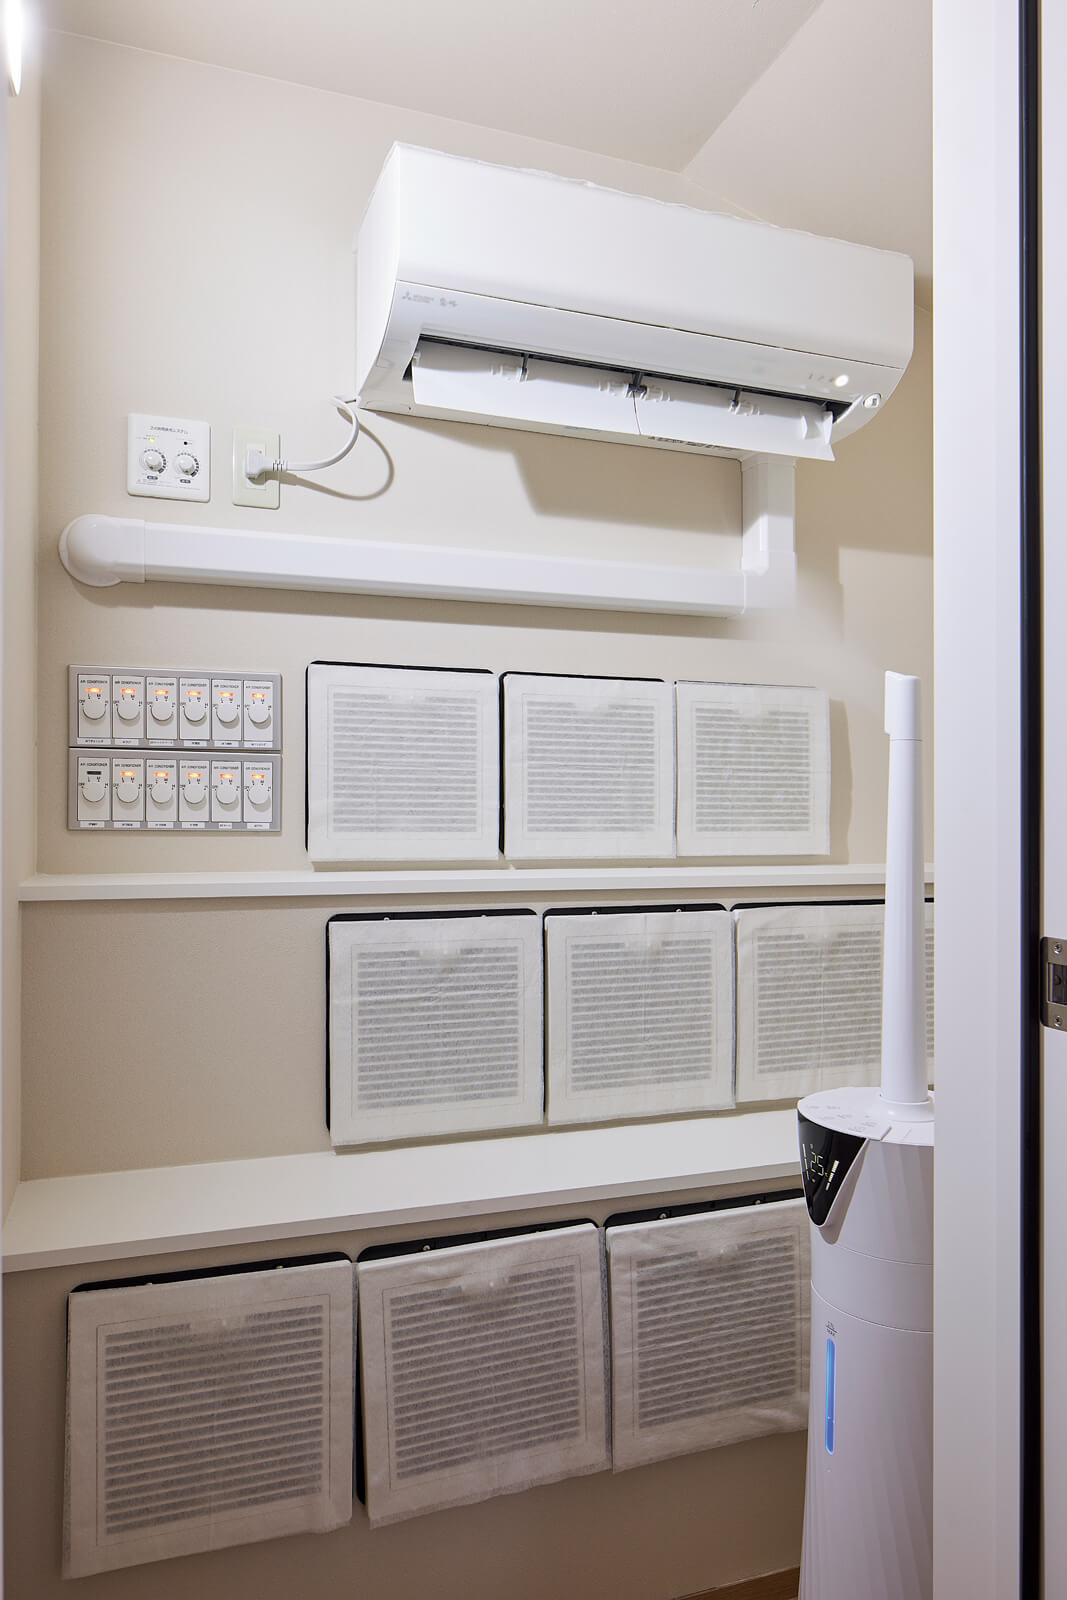 全館空調システム「YUCACO」の空調室